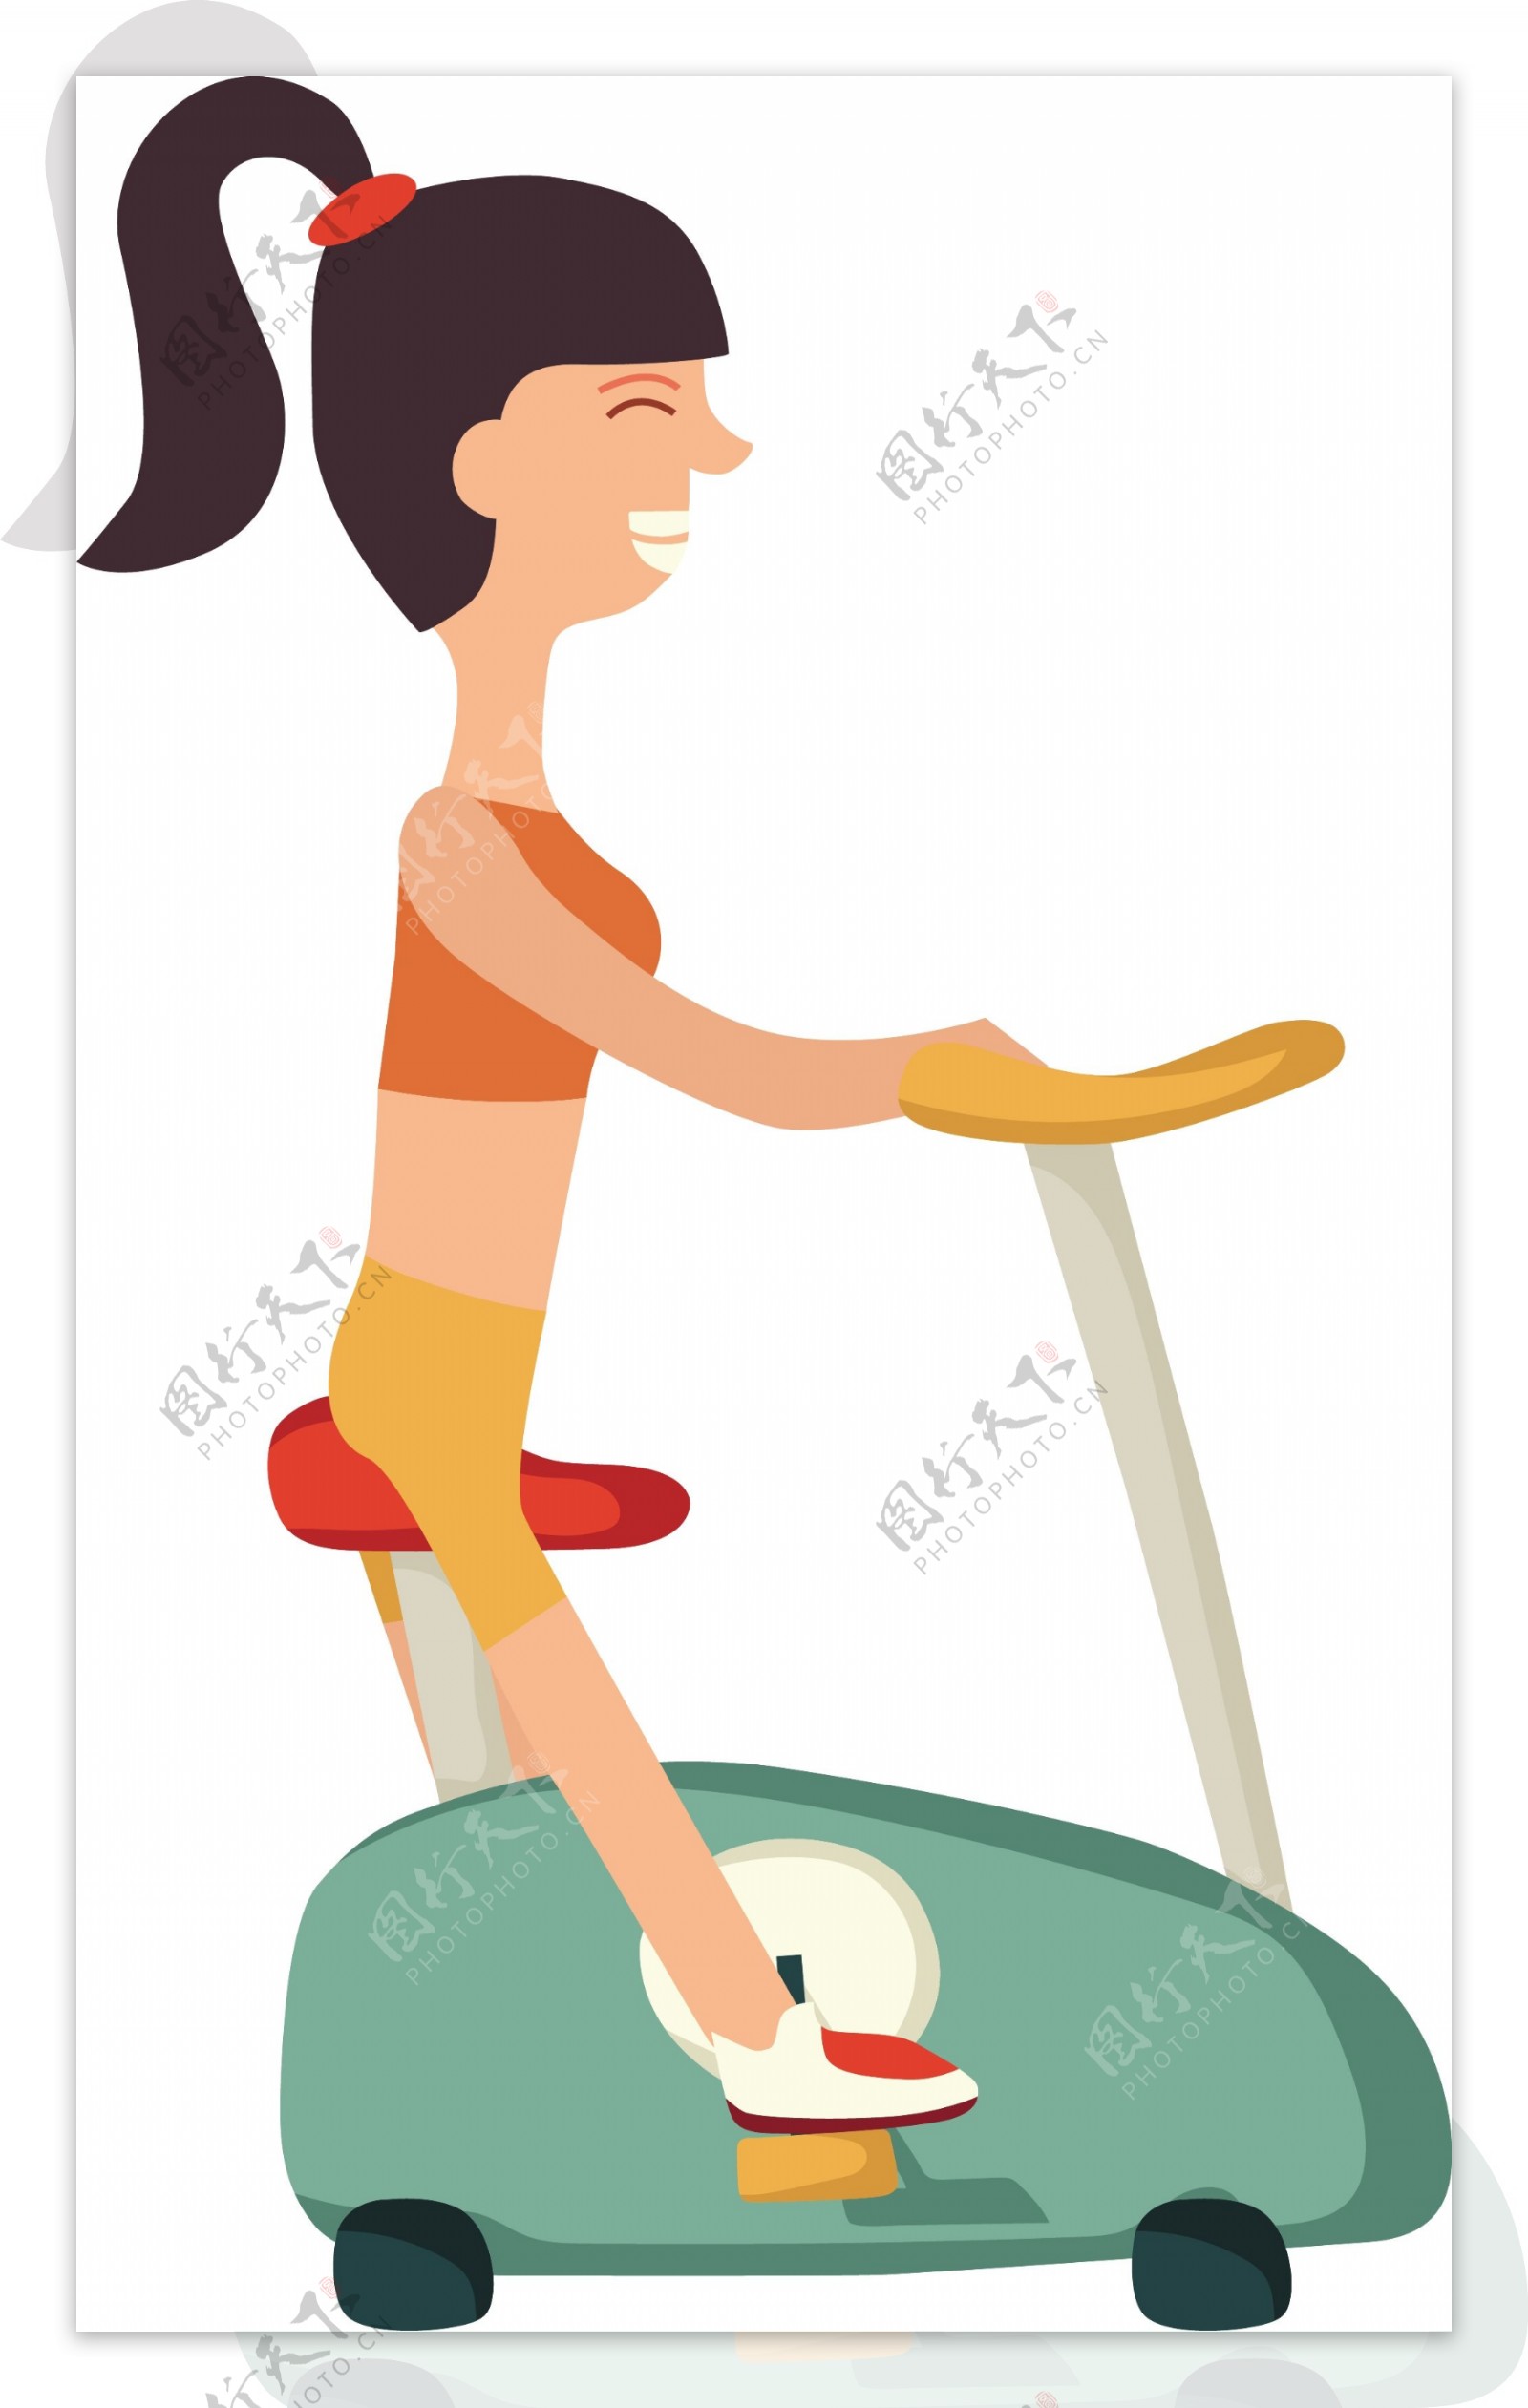 骑车健身房运动卡通人物矢量素材